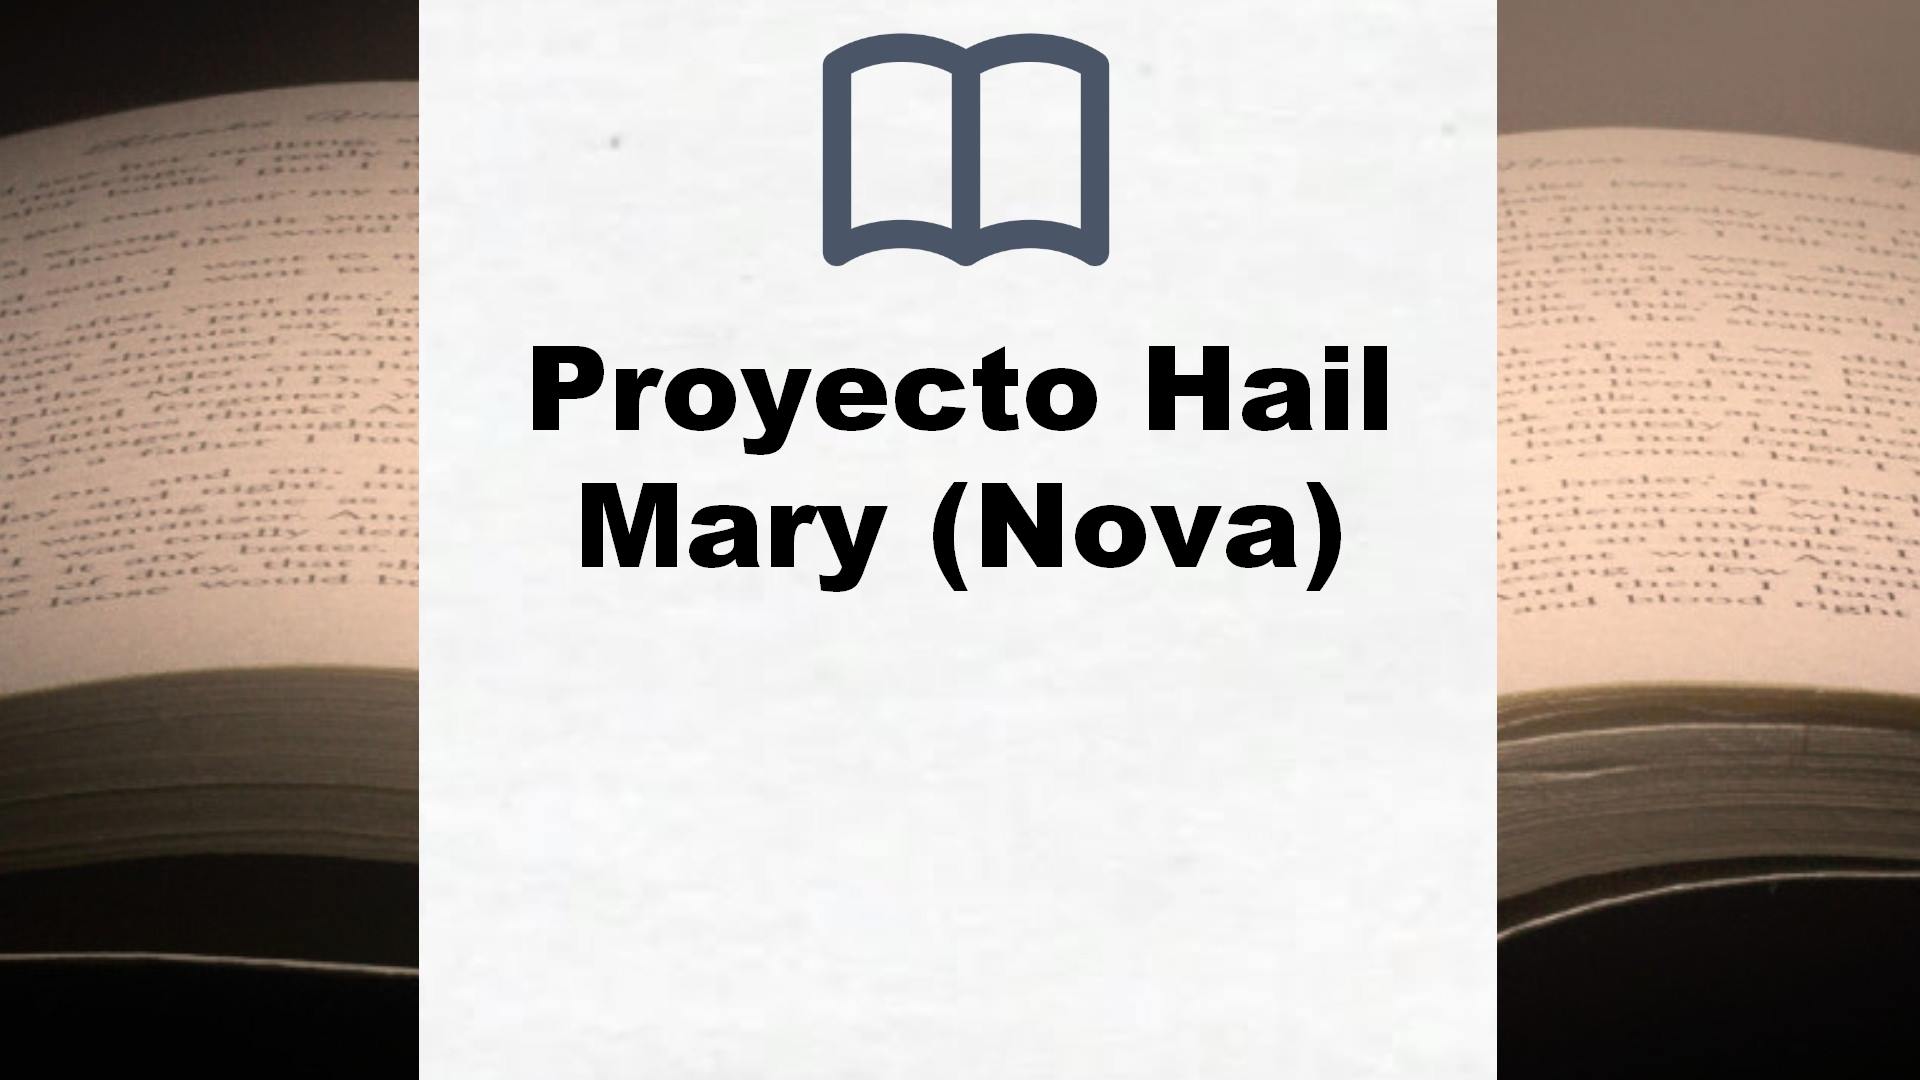 Proyecto Hail Mary (Nova) – Reseña del libro